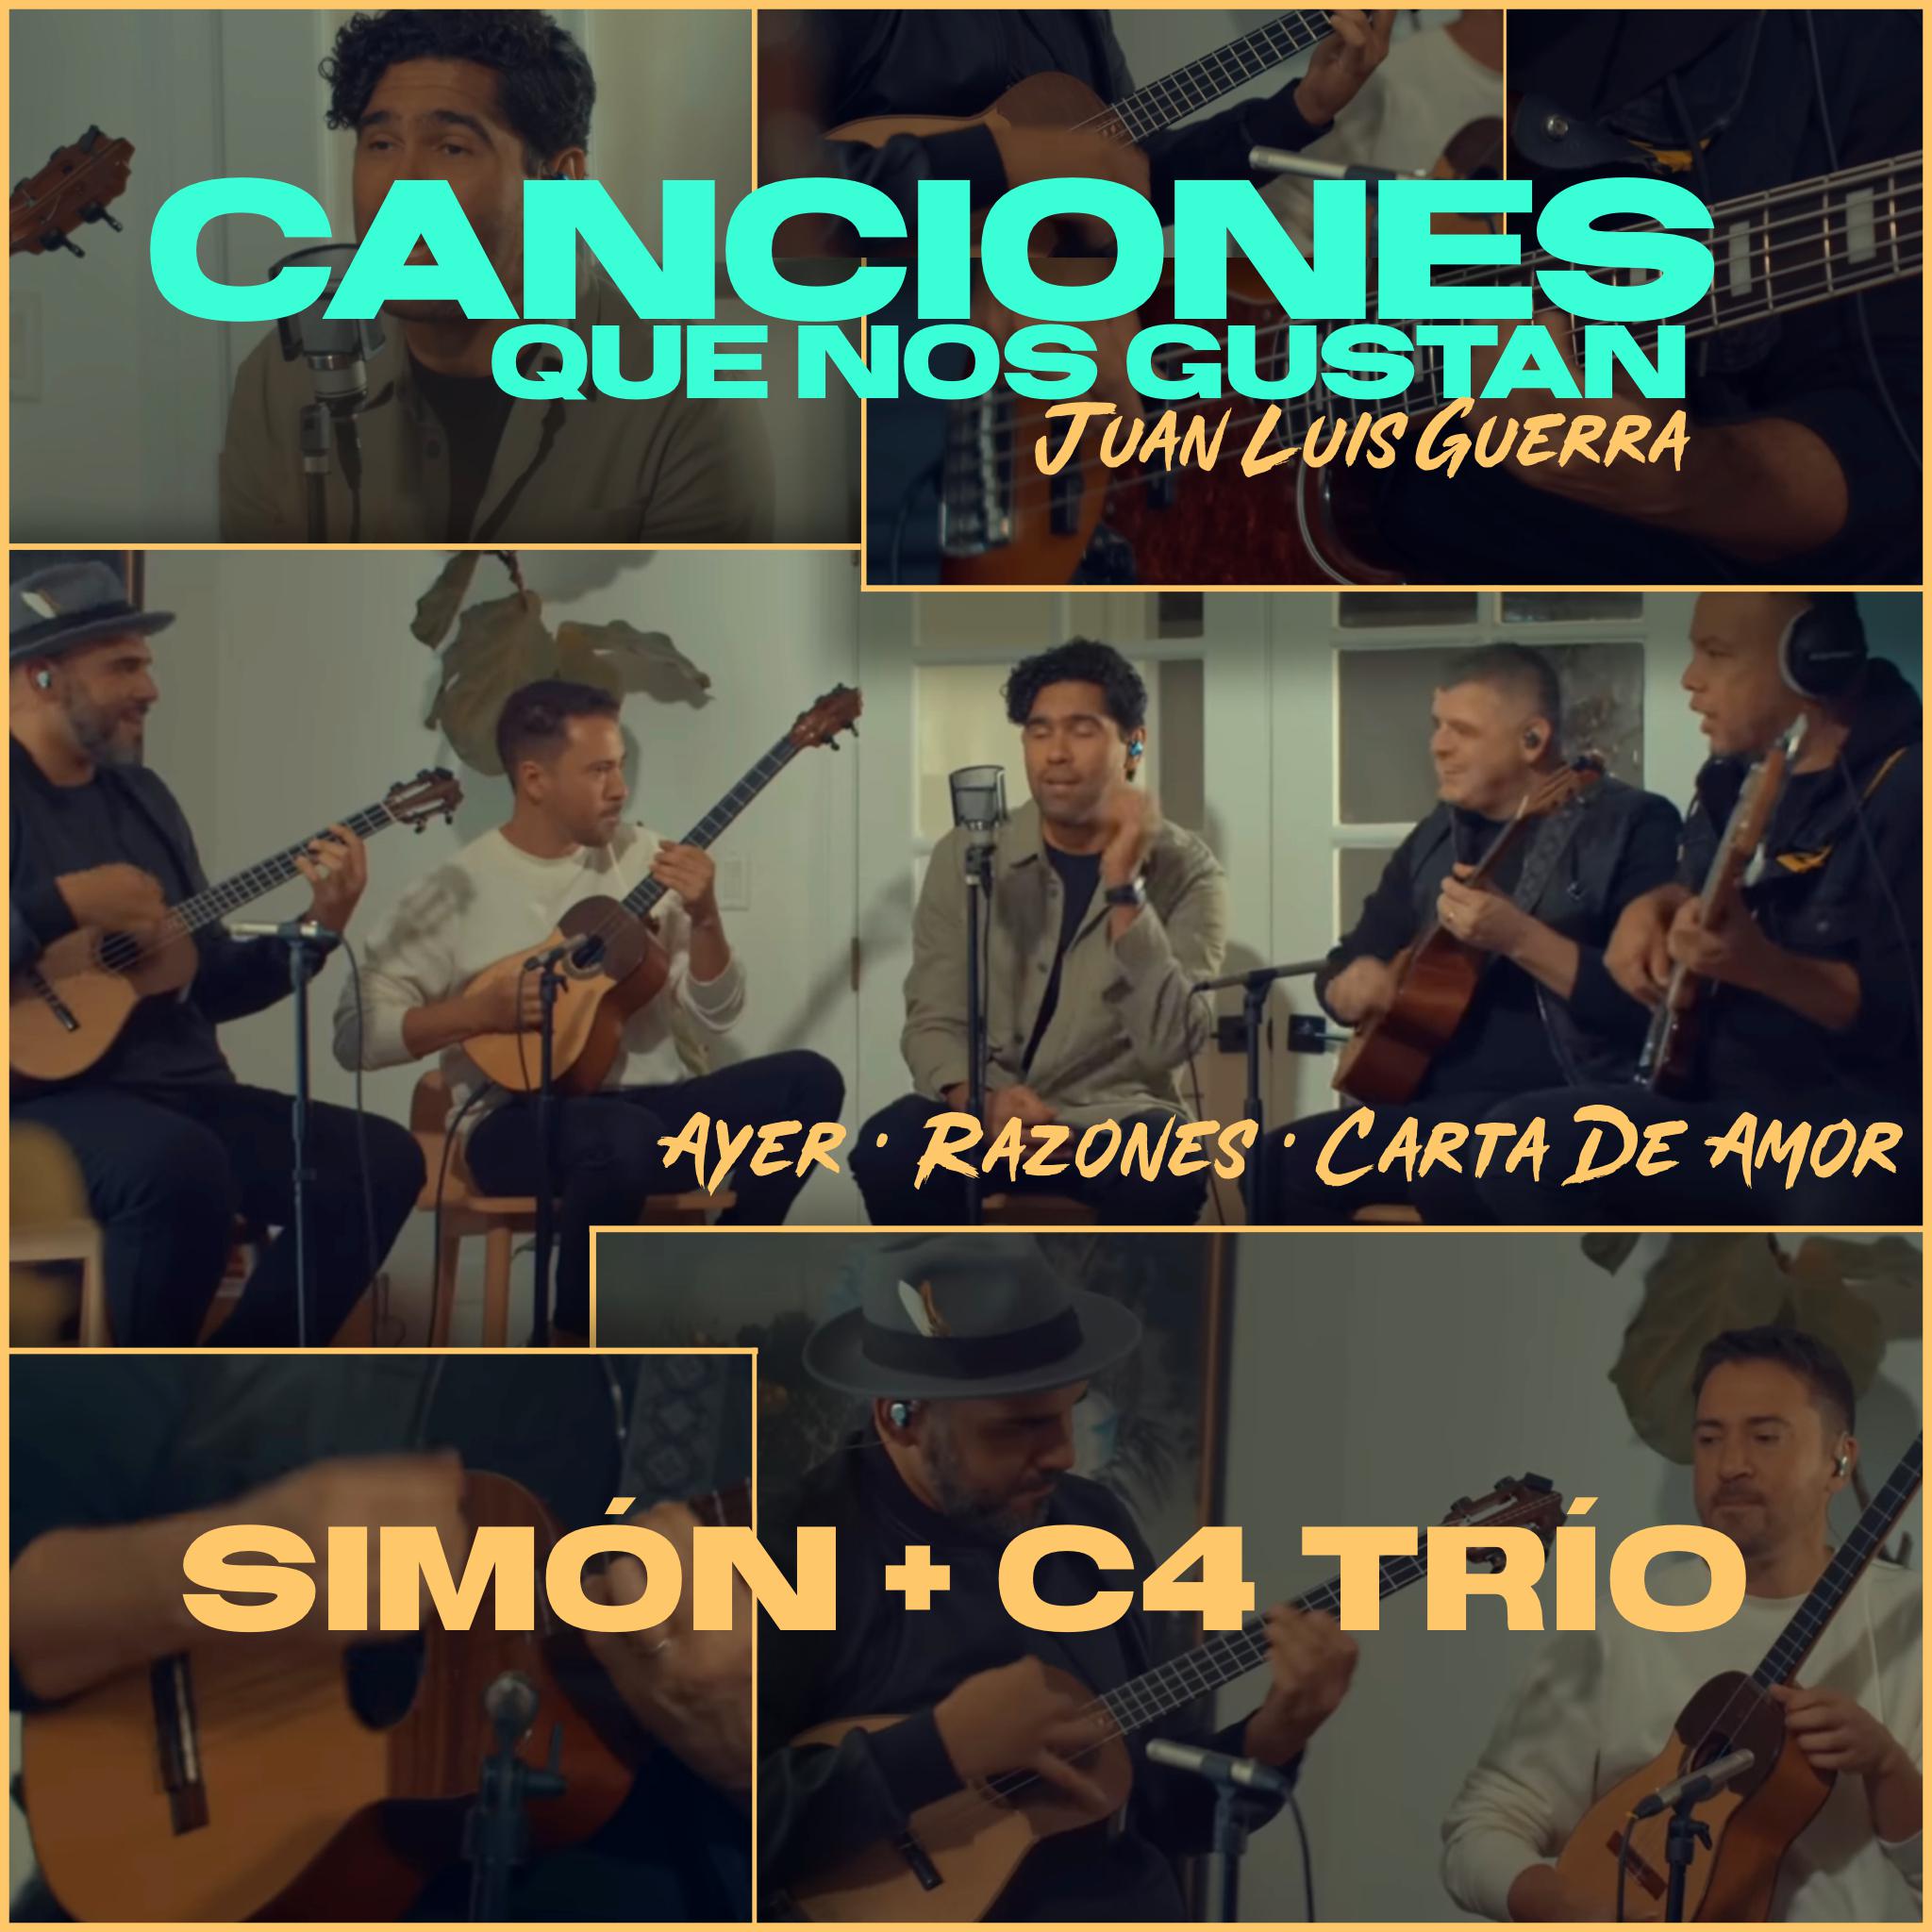 Simon - Juan Luis Guerra : Ayer / Razones / Carta de Amor (Canciones Que Nos Gustan)